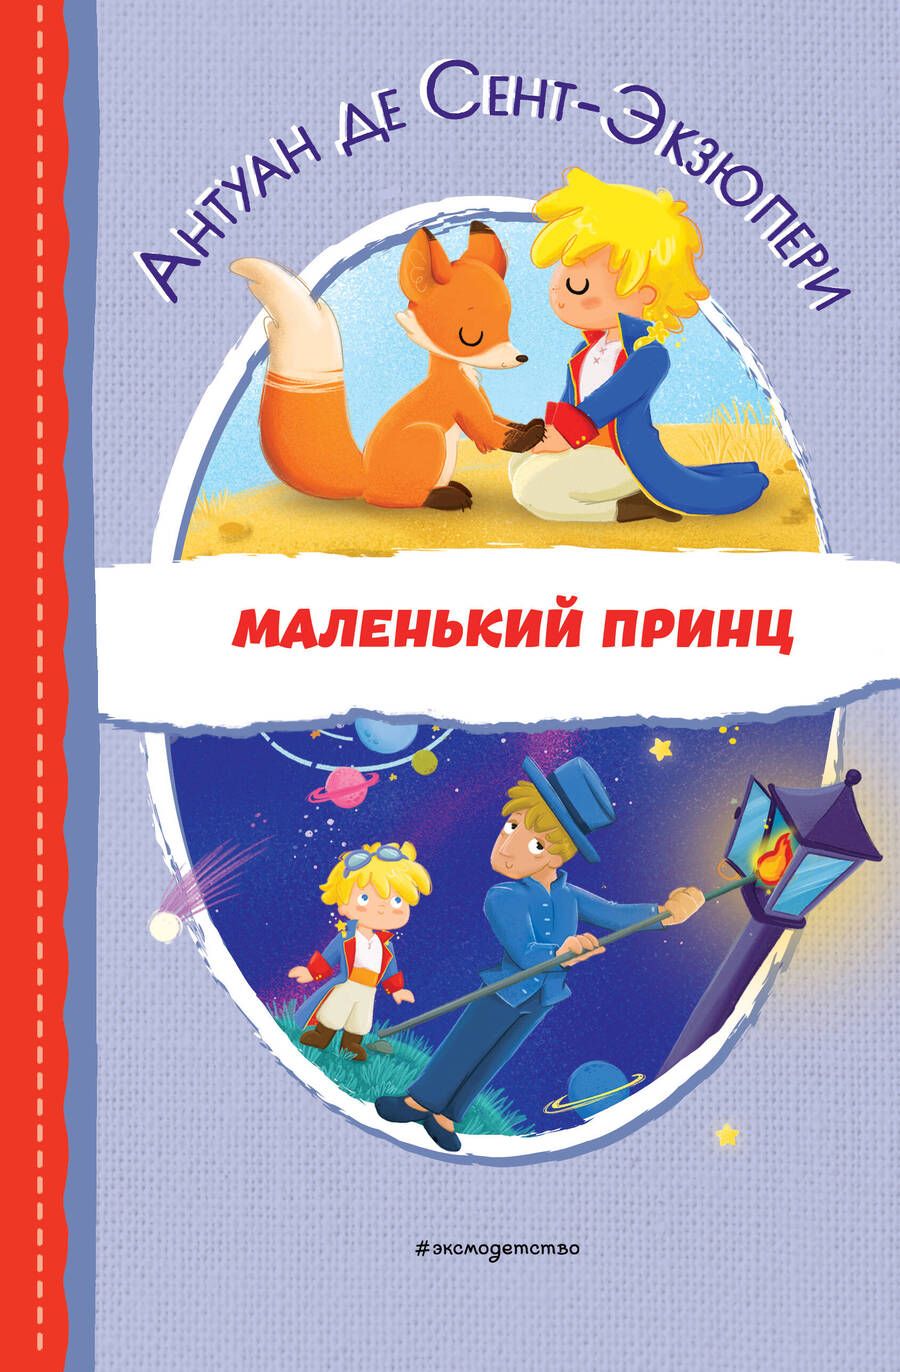 Обложка книги "Сент-Экзюпери: Маленький принц"